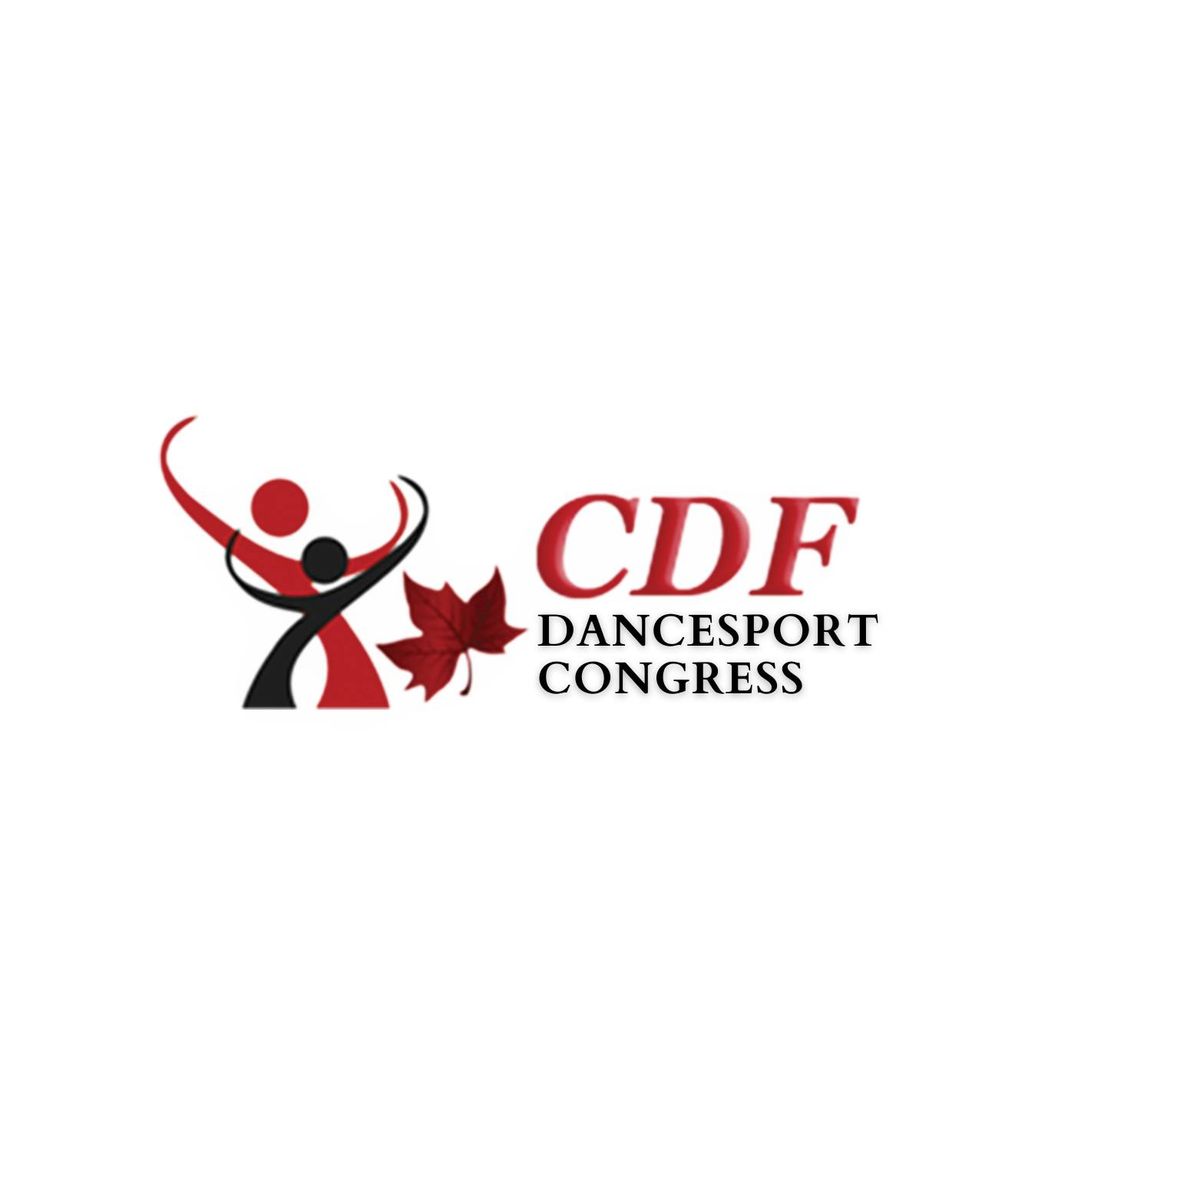 CDF Dancesport Congress